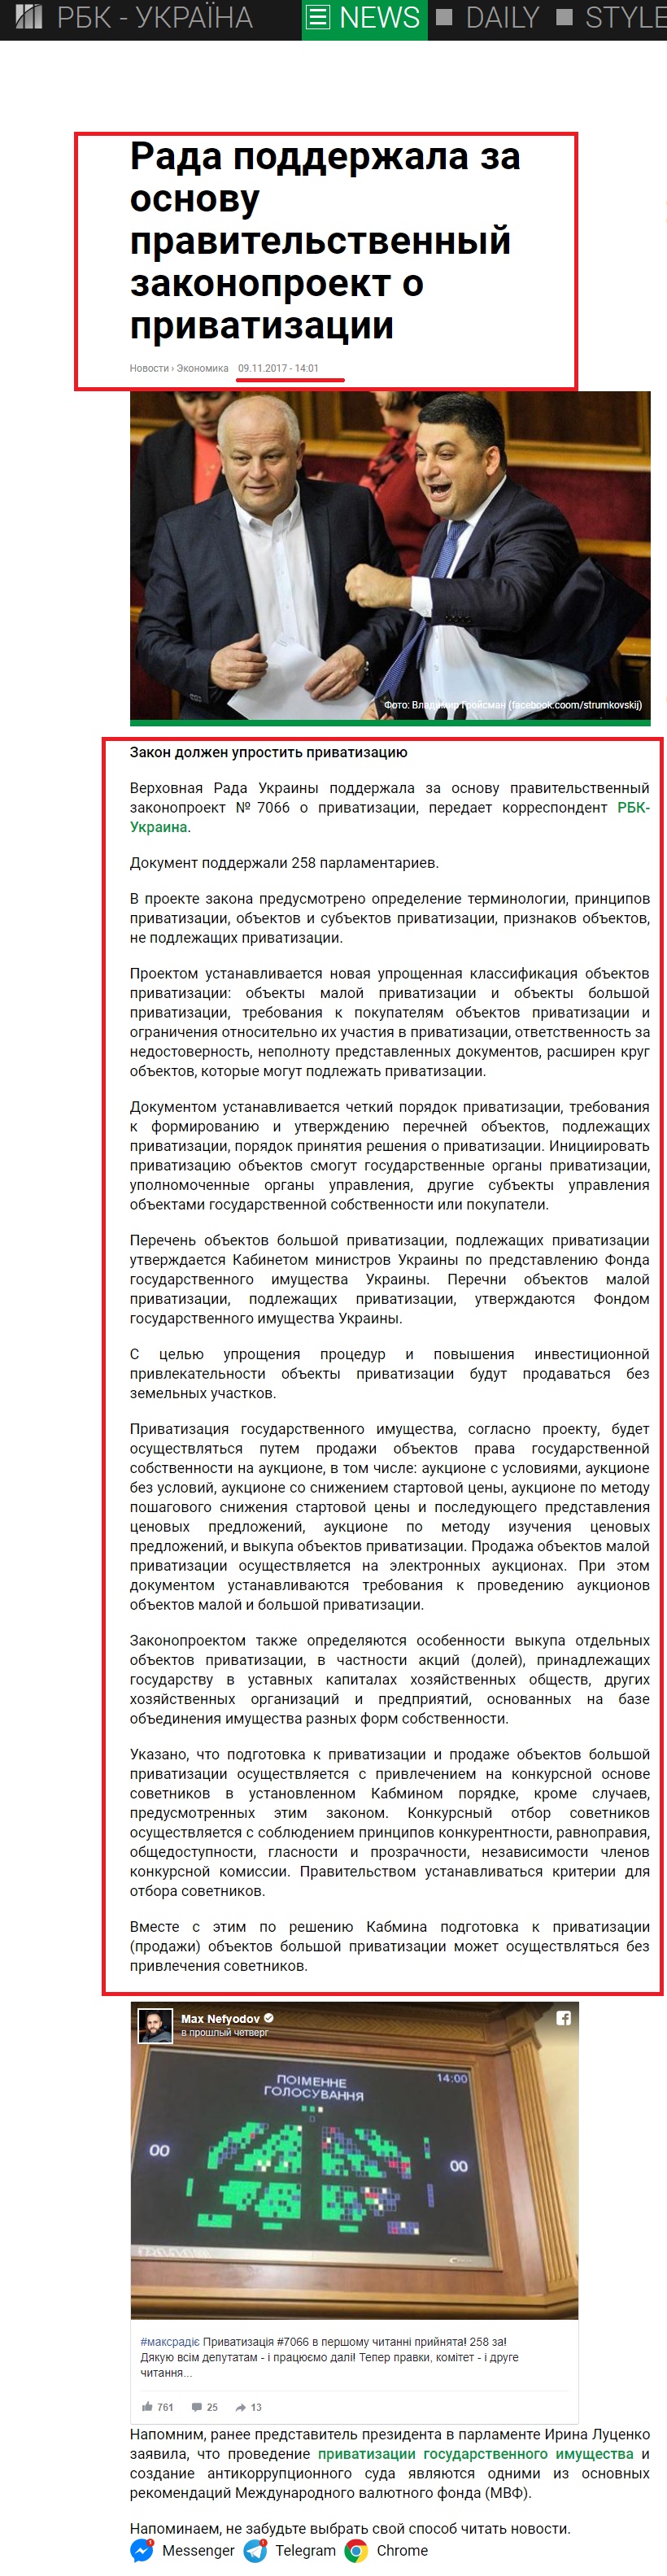 https://www.rbc.ua/rus/news/rada-podderzhala-osnovu-pravitelstvennyy-1510228542.html